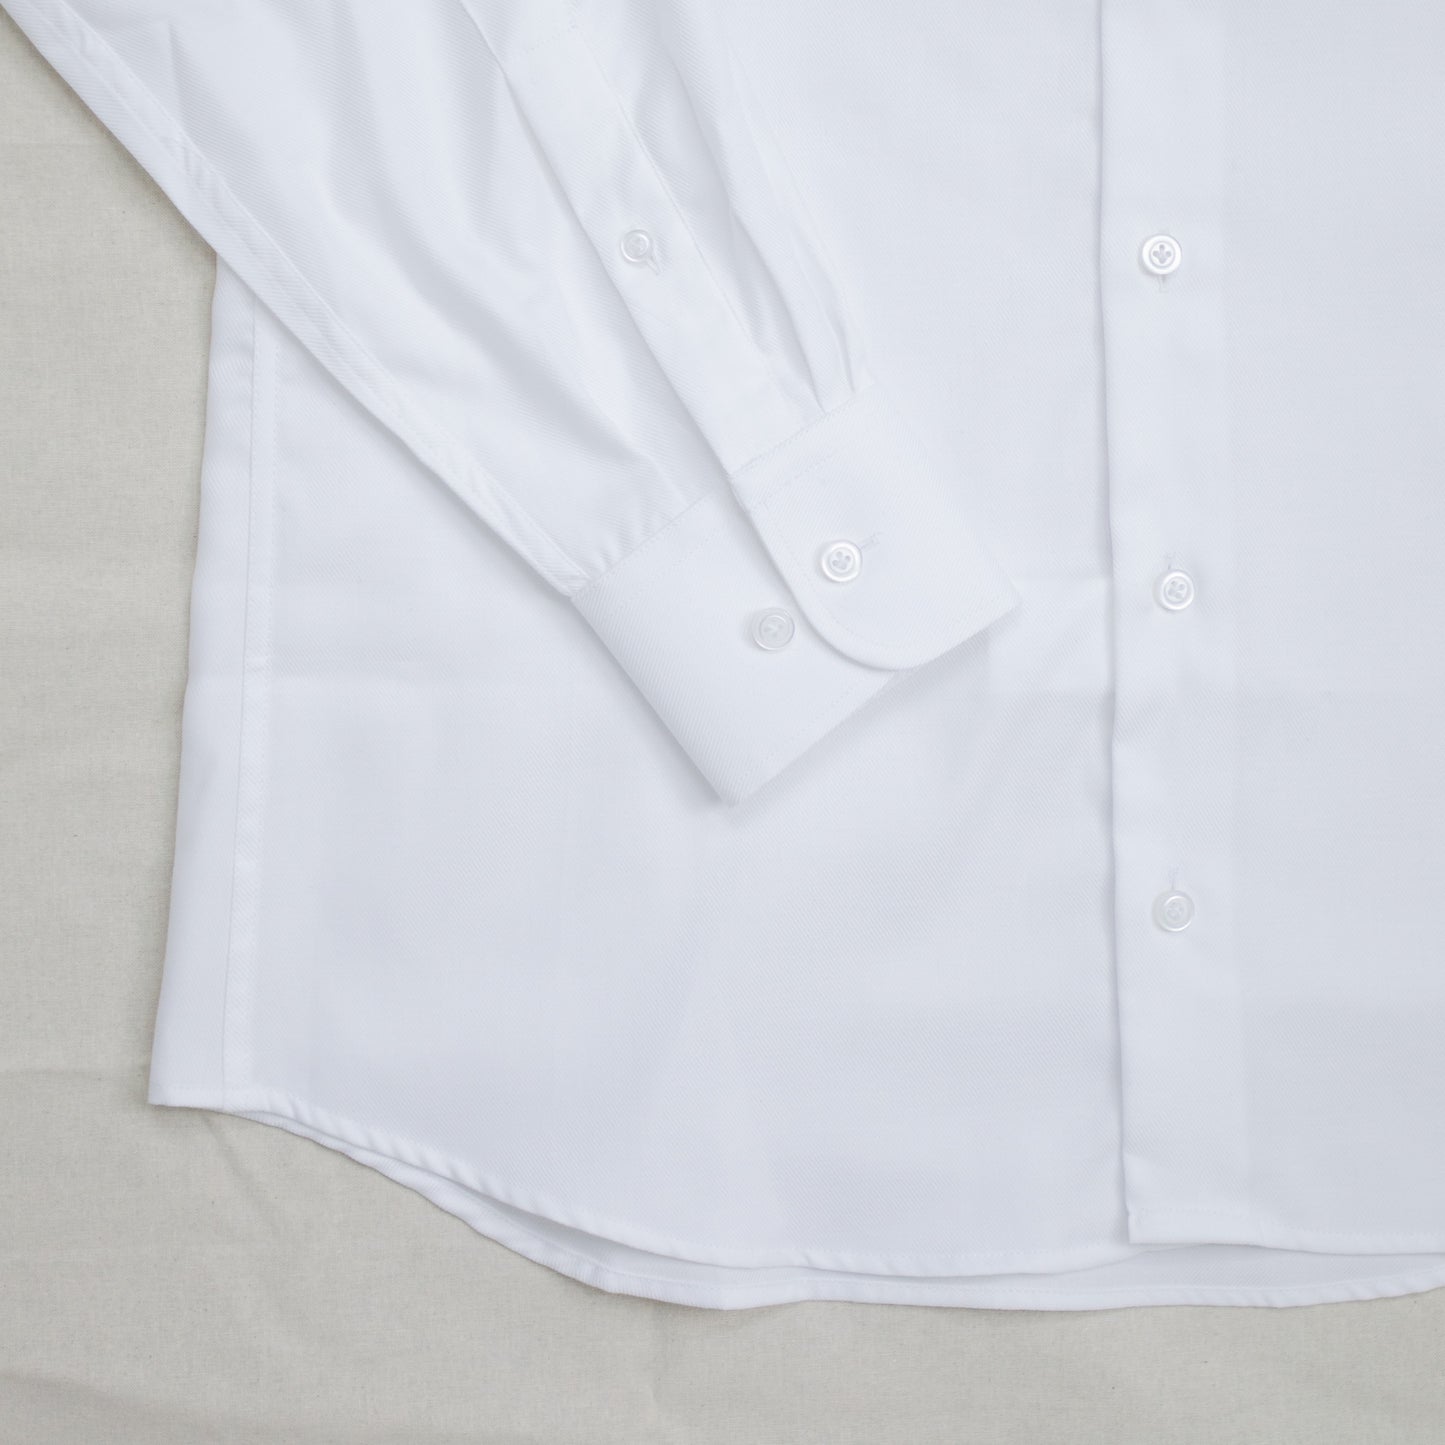 Club collar shirt - White